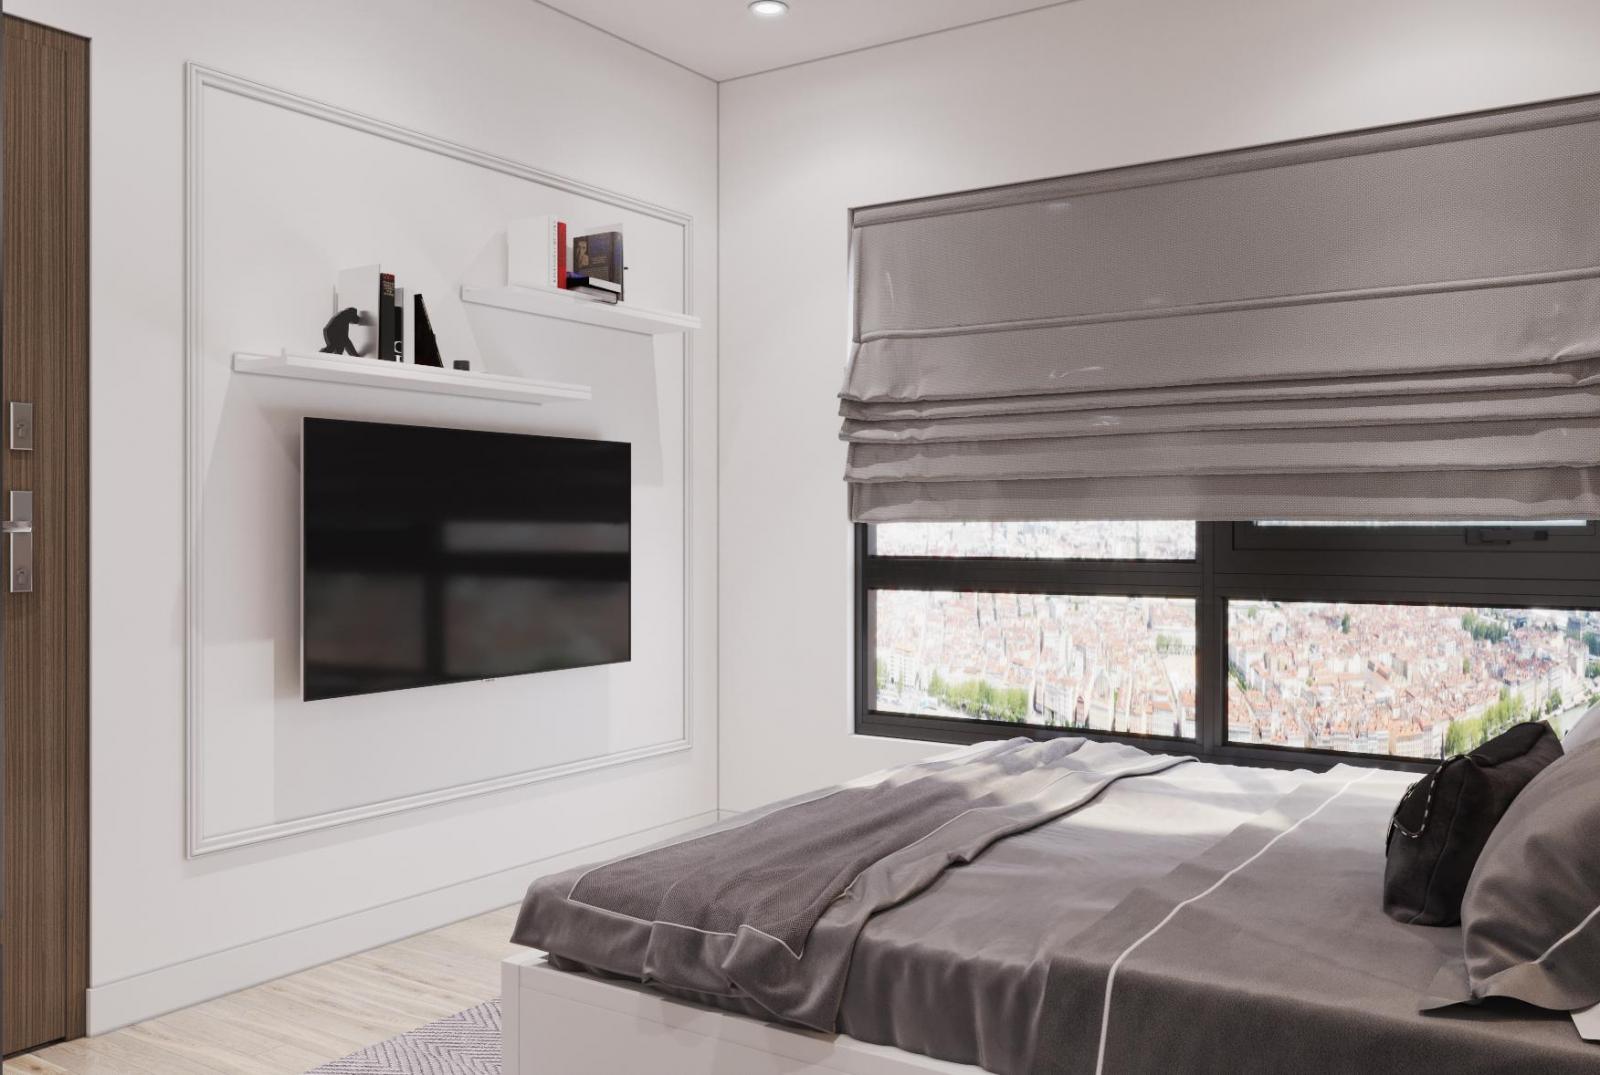 Kệ tivi treo tường trong phòng ngủ căn hộ 53m2 được thiết kế đơn giản, nhỏ gọn,  tinh tế. Sắc trắng tinh khôi như "tàng hình", không cồng kềnh, chiếm diện tích.